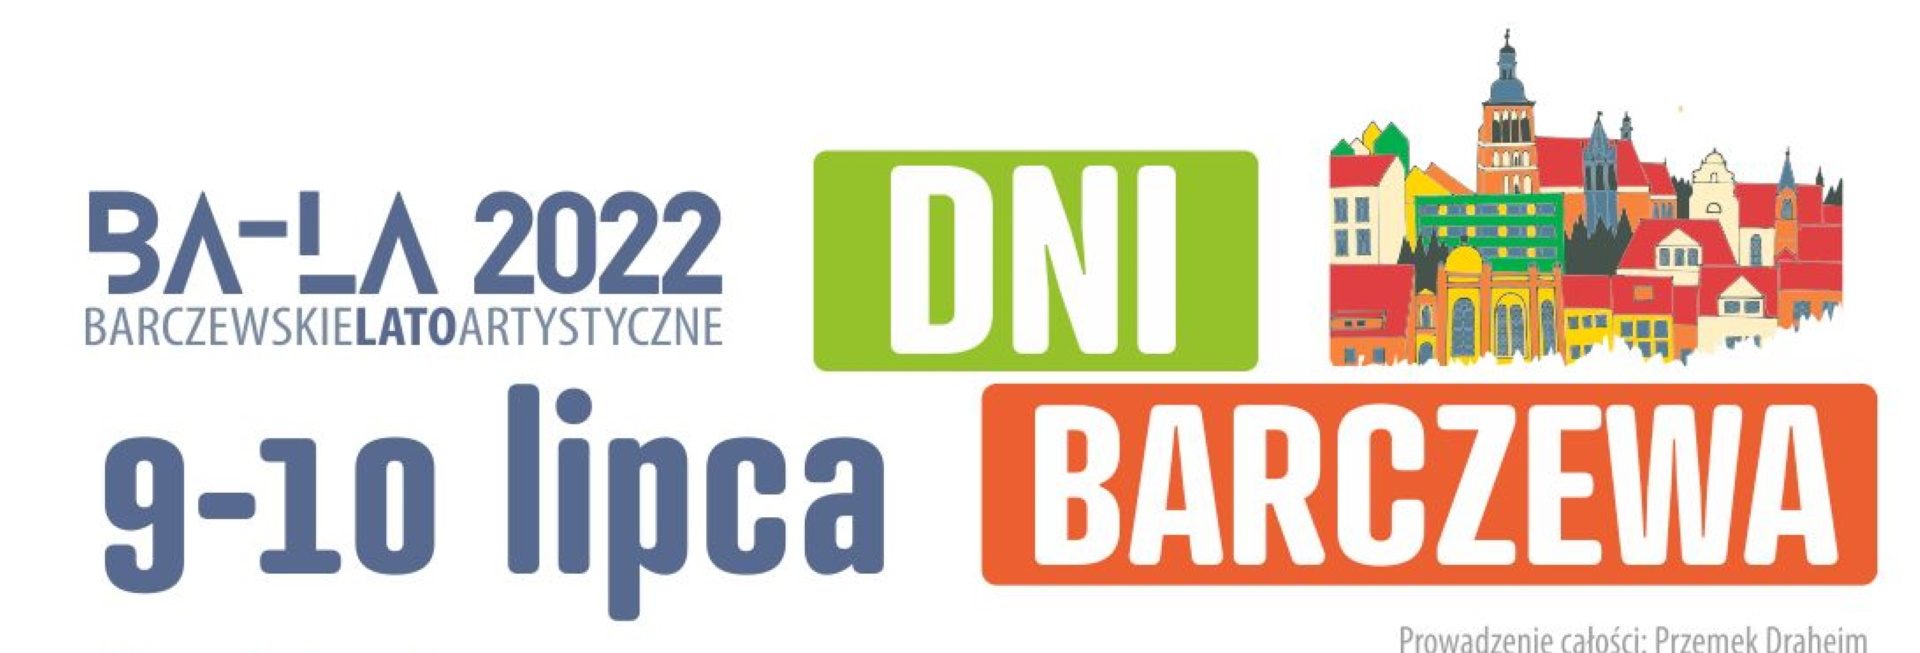 Plakat zapraszający do Barczewa na coroczną imprezę miasta Dni Barczewa 2022.